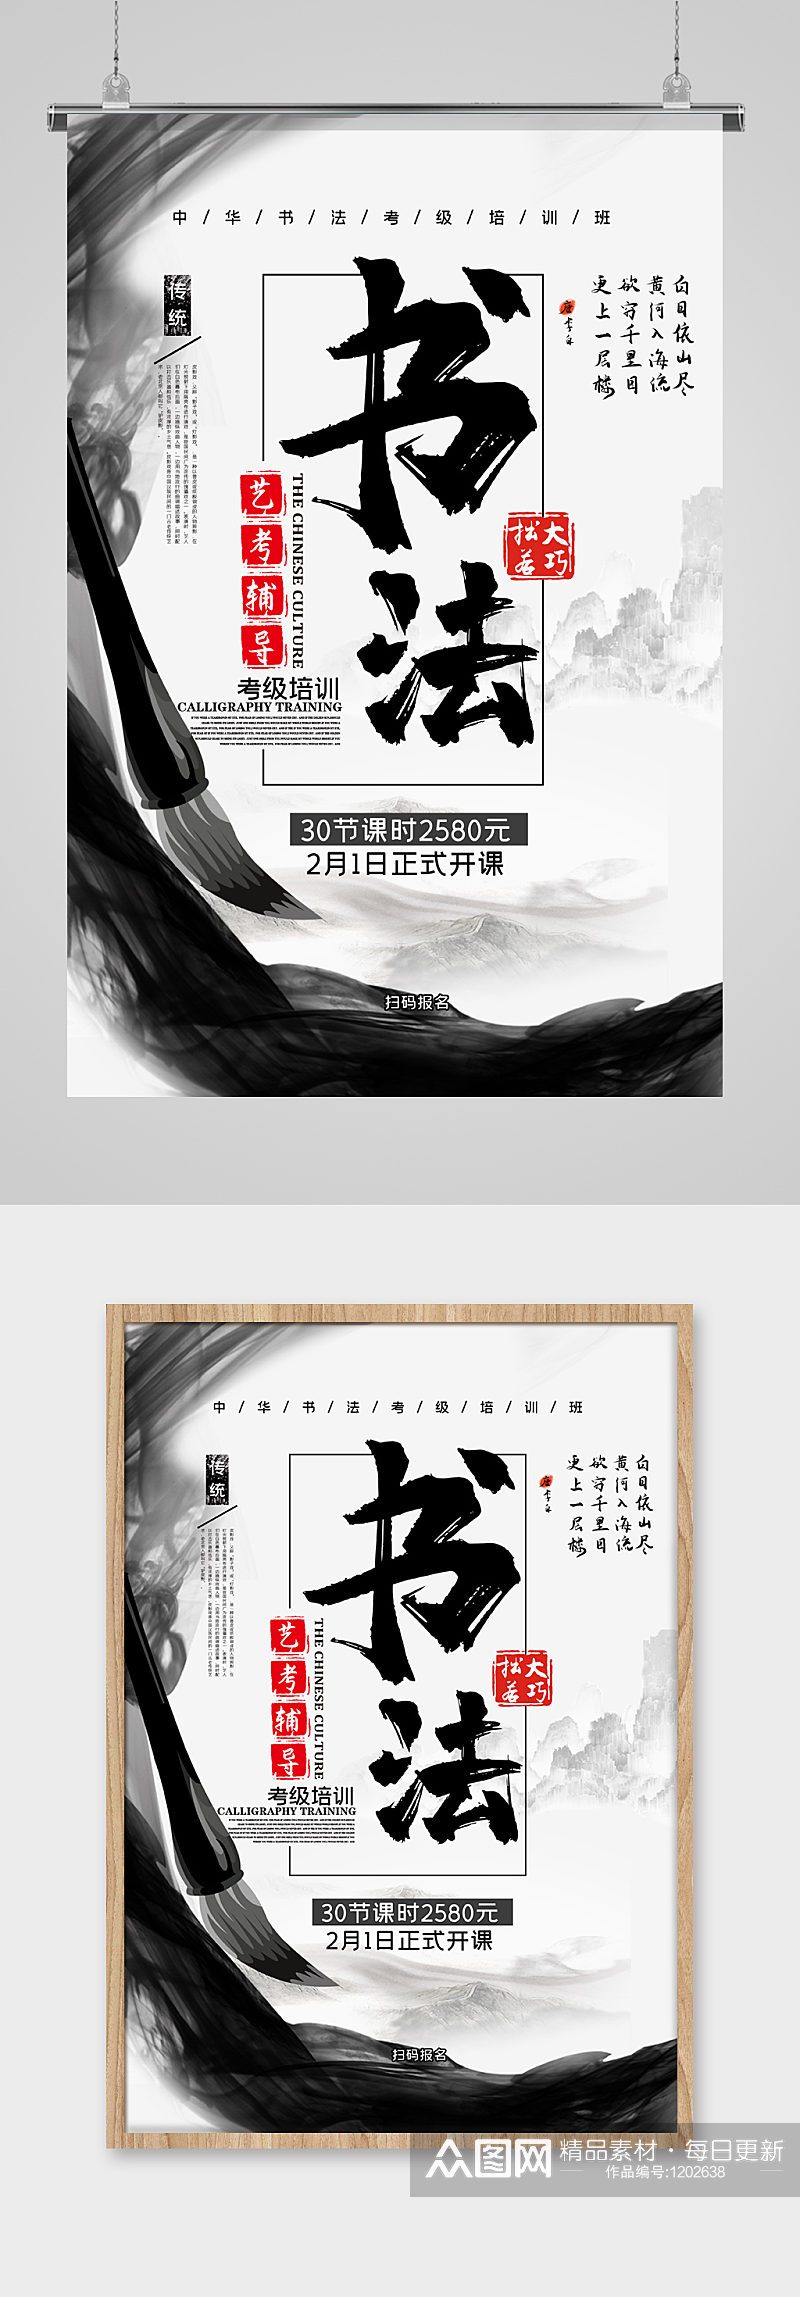 书法培训兴趣班辅导黑白色中国风宣传海报素材